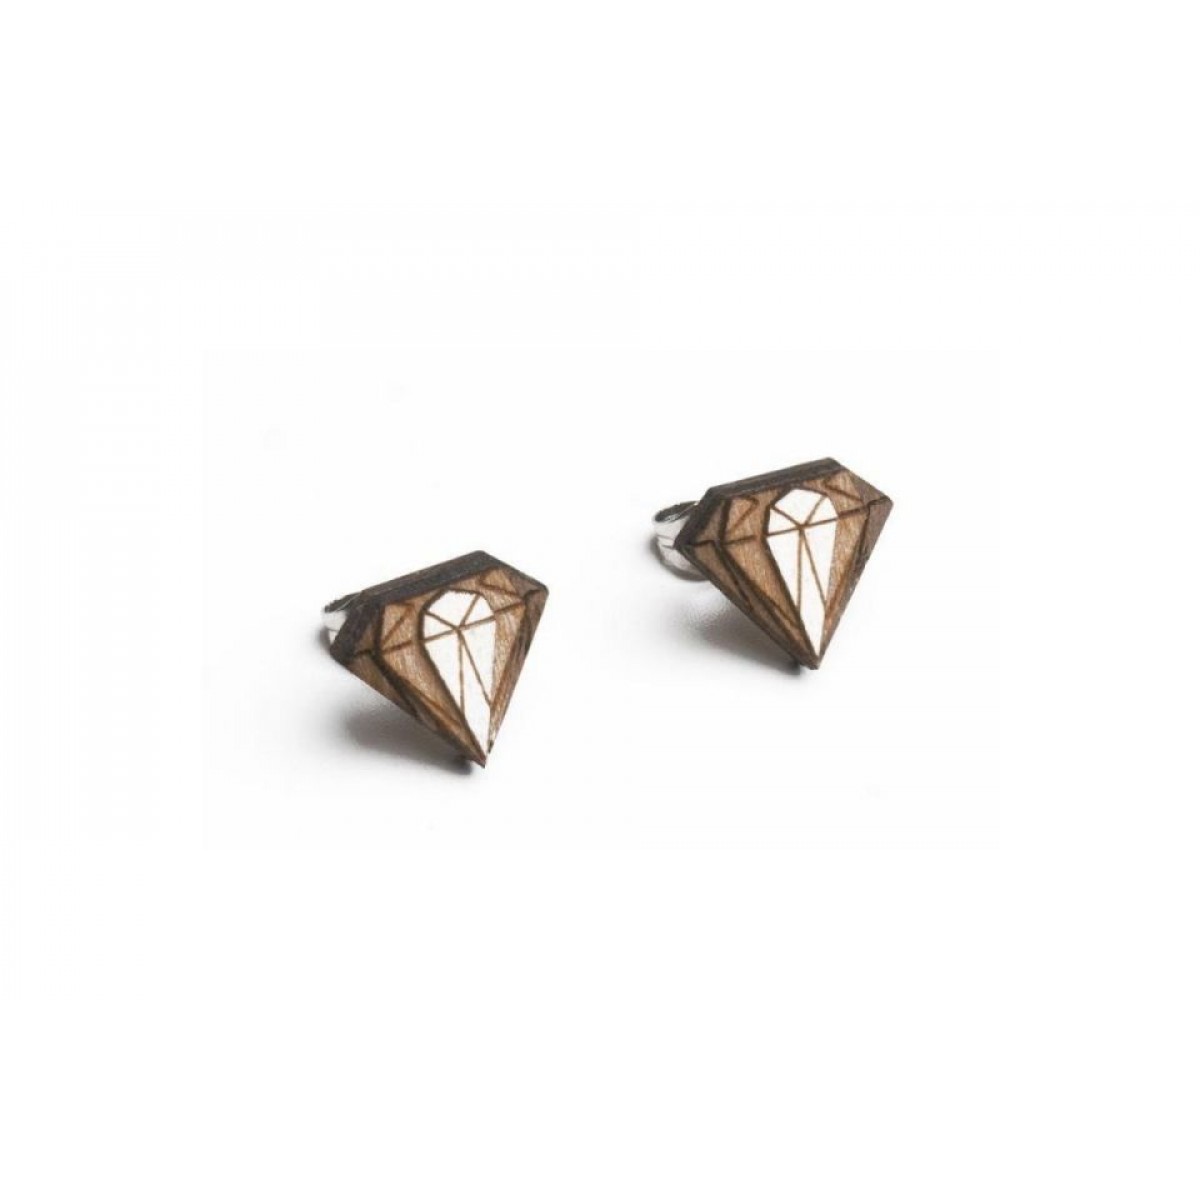 BeWooden Ohringe - Ohrstecker aus Holz - Diamond Earrings